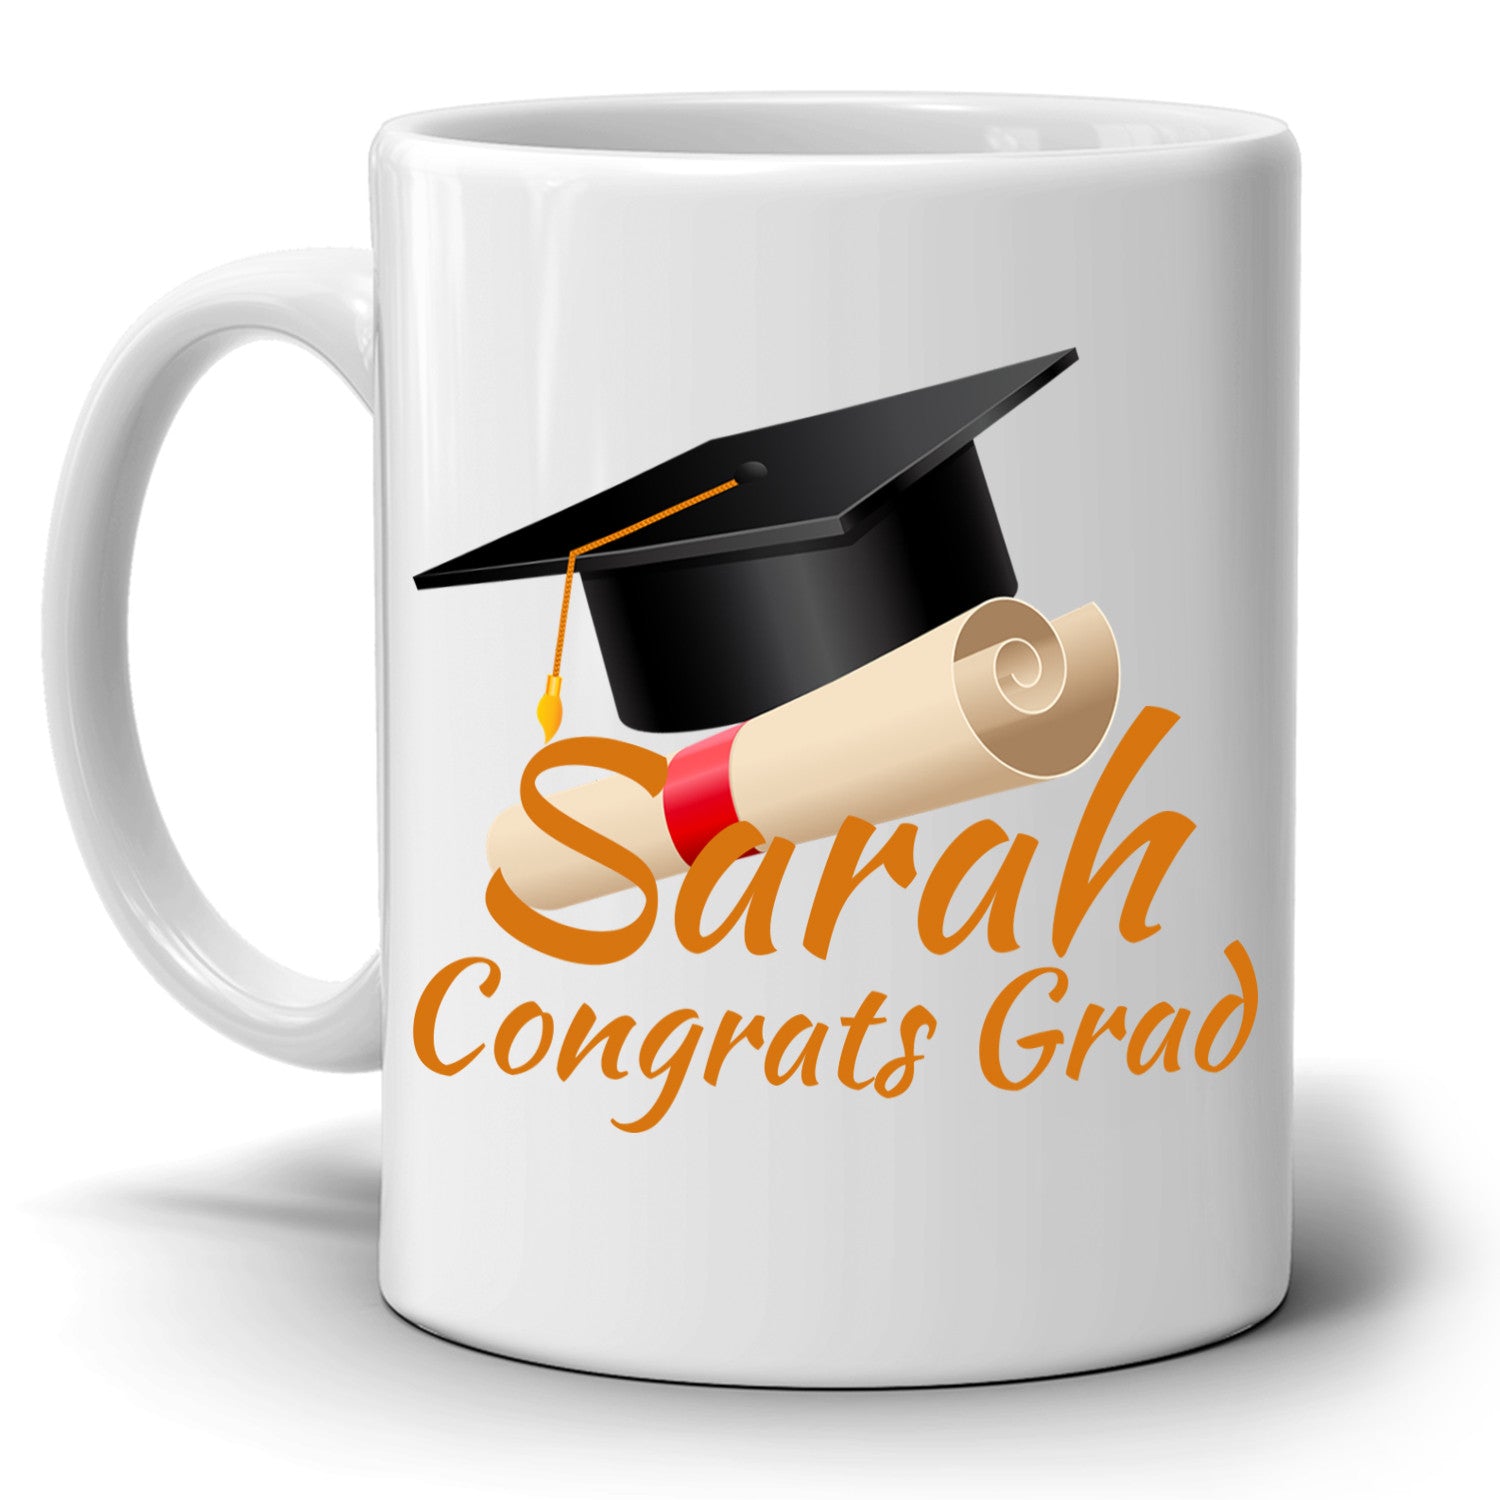 Personalized! Congrats Grad Gift Cap Coffee Mug, College ...